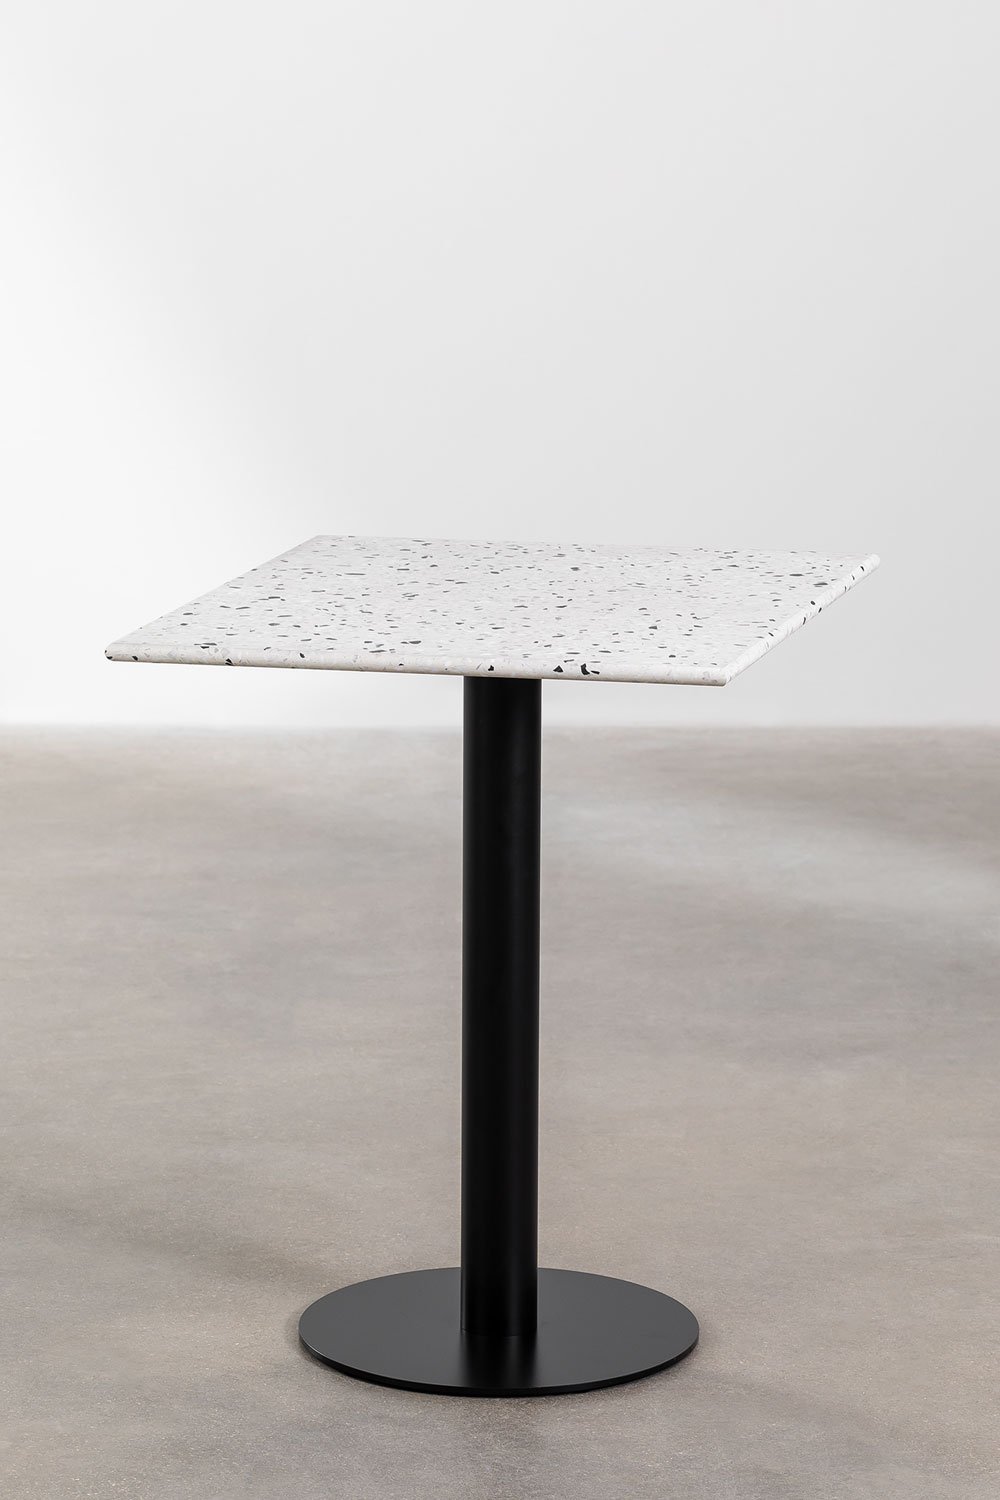 Table de Bar Carrée en Terrazzo (60x60 cm) Dolce, image de la galerie 1